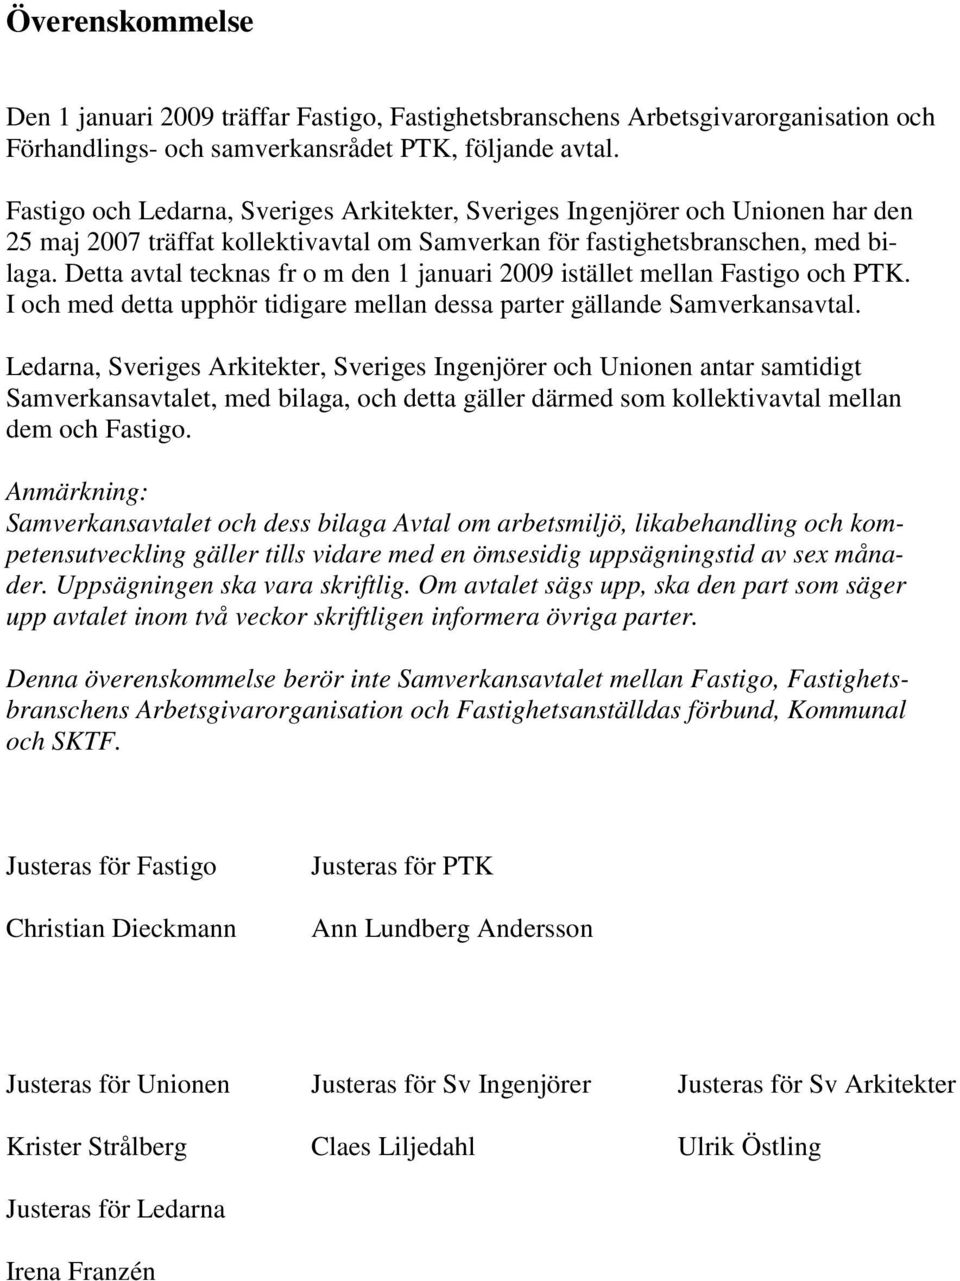 Detta avtal tecknas fr o m den 1 januari 2009 istället mellan Fastigo och PTK. I och med detta upphör tidigare mellan dessa parter gällande Samverkansavtal.